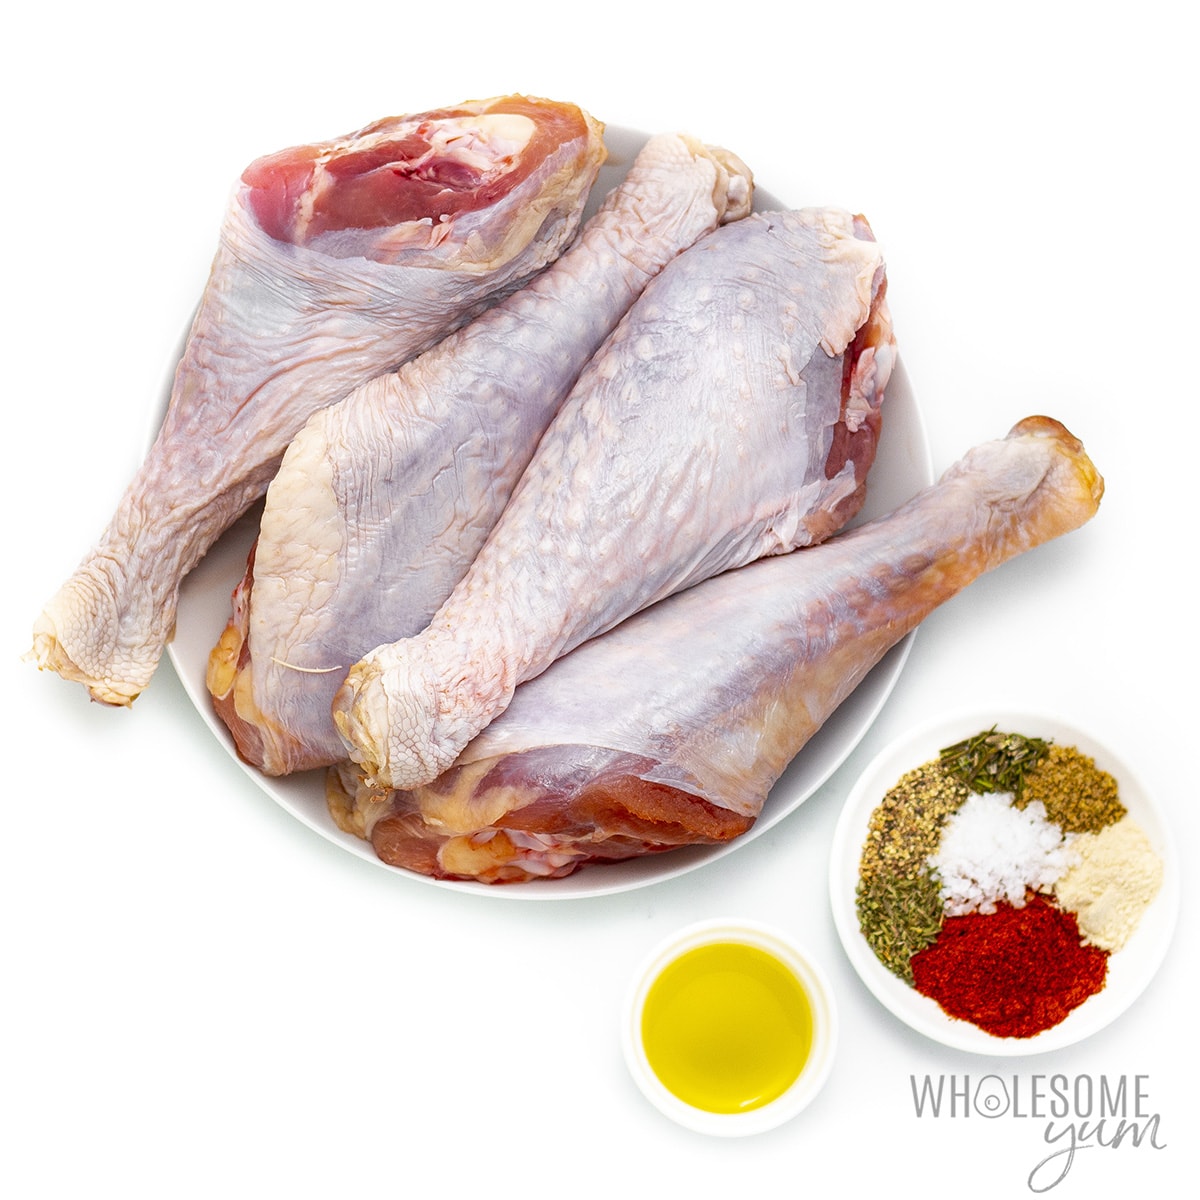 Ingredients for roasting turkey legs.